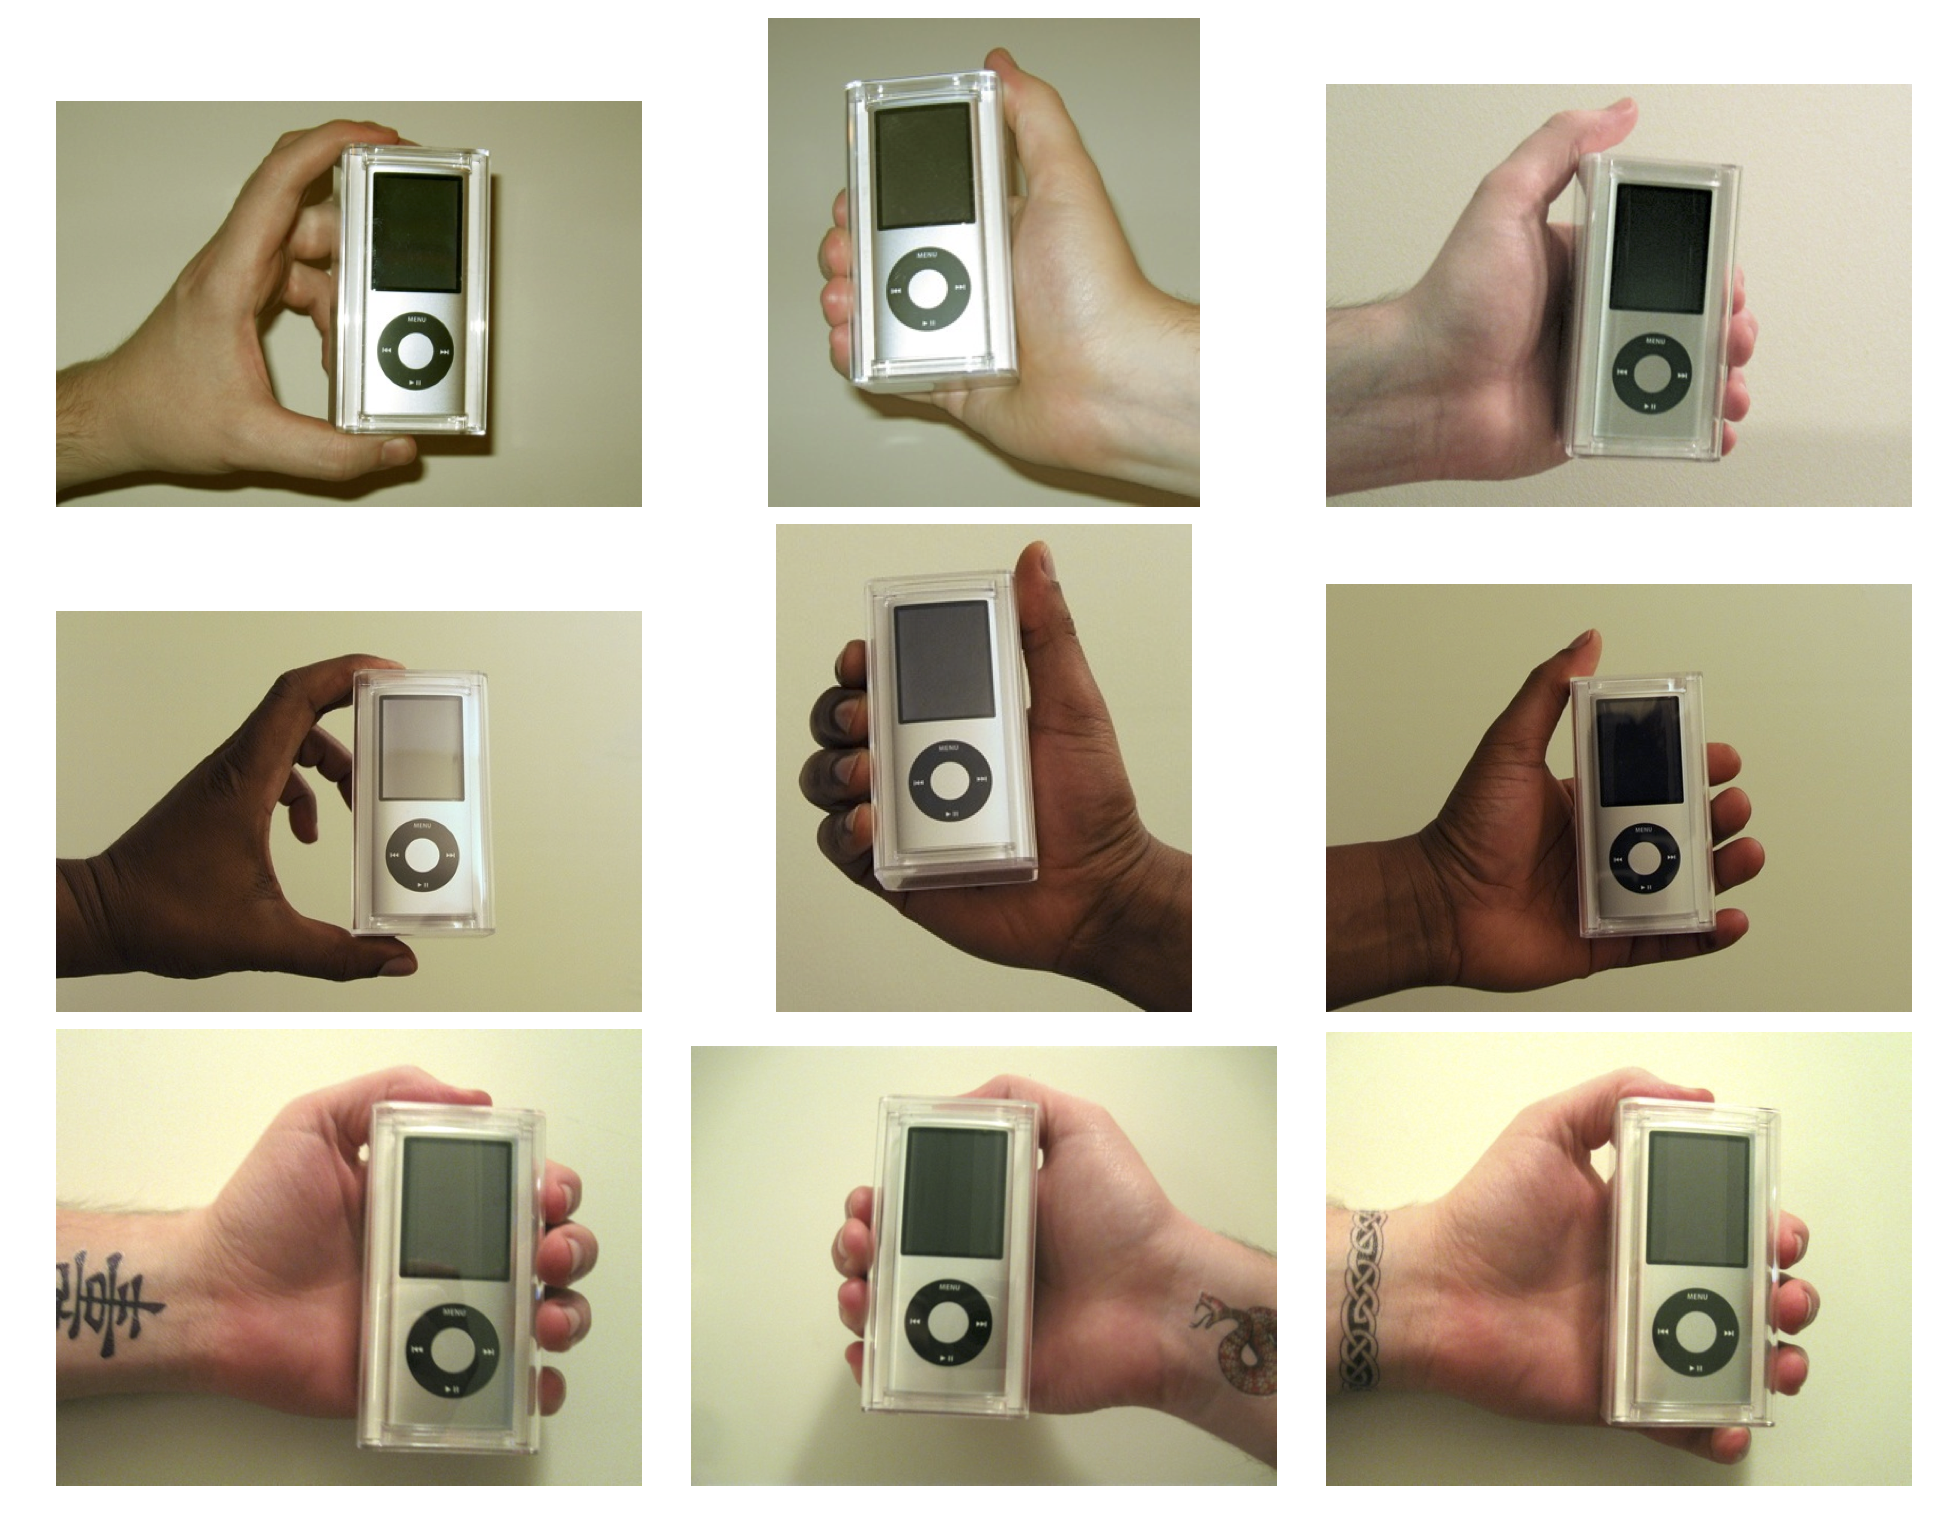 Figur 4.13: Händer som används i experimentet Doleac och Stein (2013). iPods såldes av säljare med olika egenskaper för att mäta diskriminering i en online-marknadsplats. Reproducerad med tillstånd från Doleac och Stein (2013), figur 1.